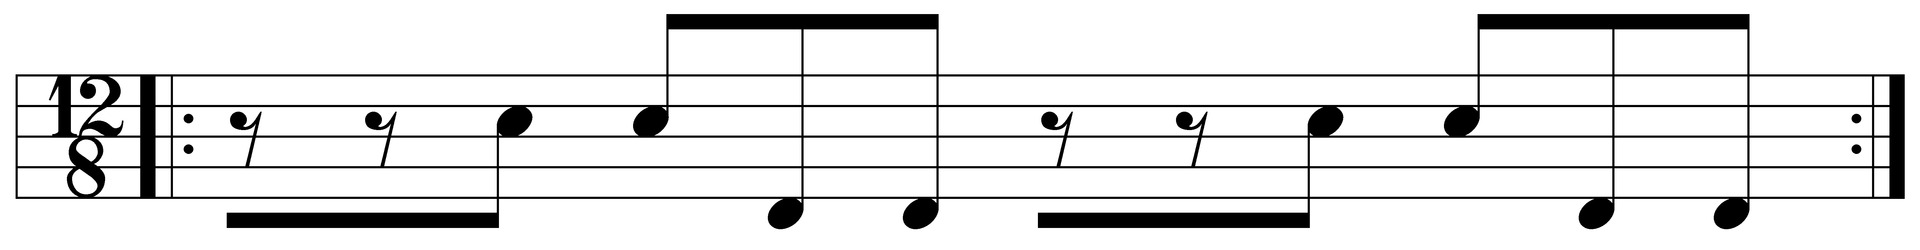 Композиционная мелодия в стиле гавана колумбийского салидора и сегундо